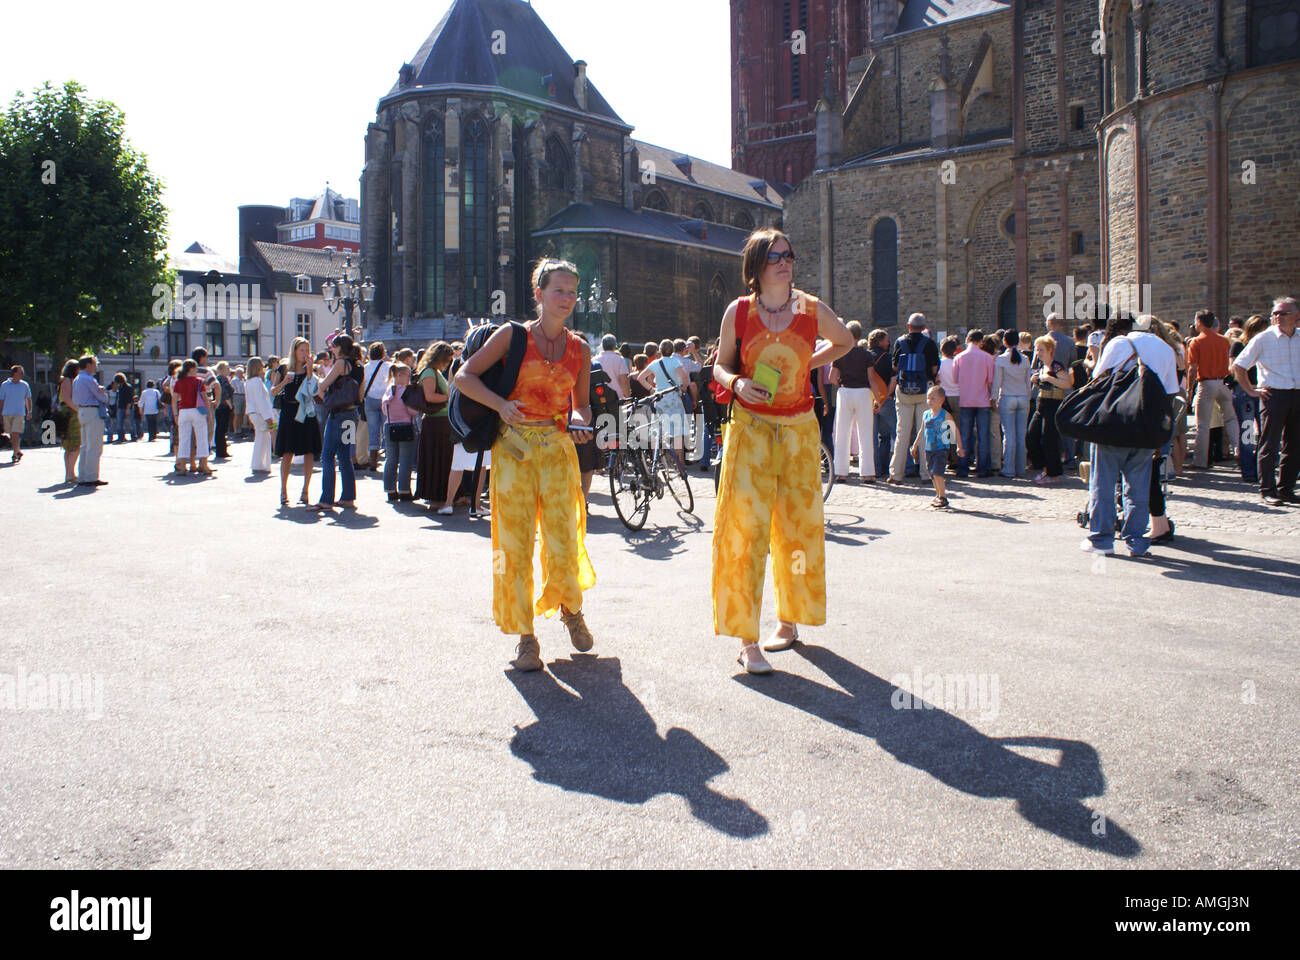 Deux spectateurs habillés à l'air libre de Maastricht performance Banque D'Images